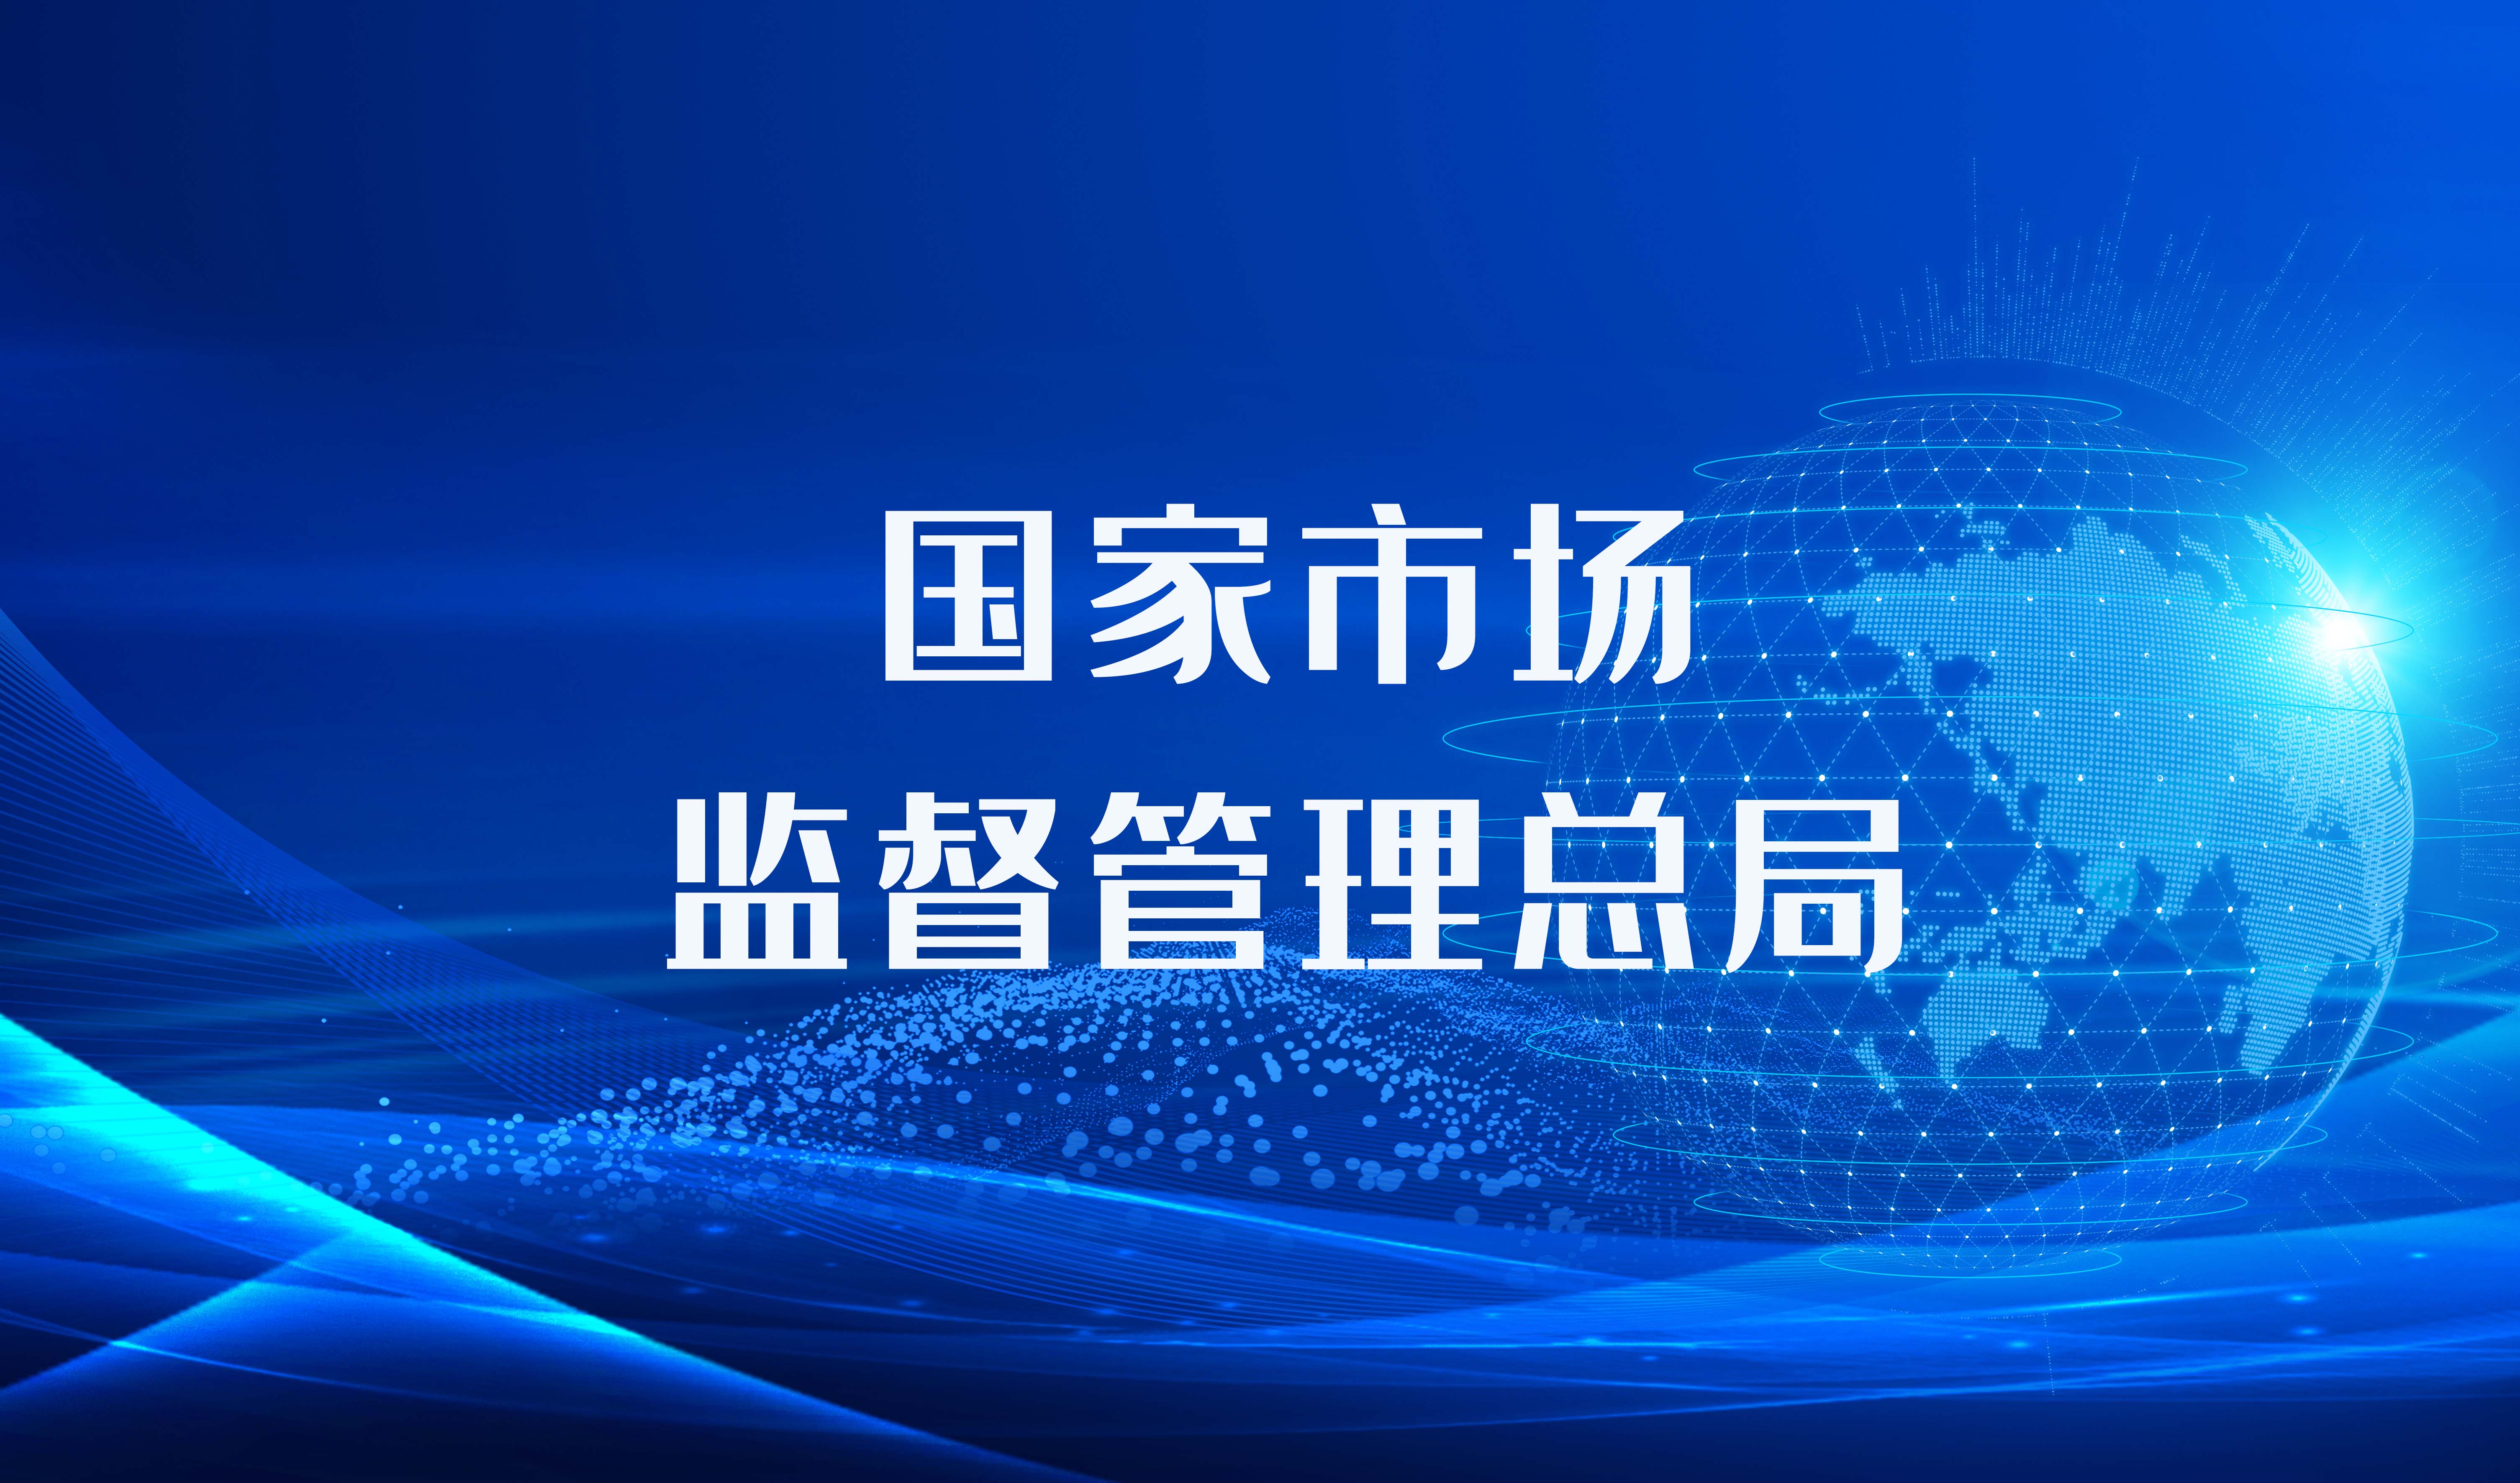 华晨宝马汽车有限公司、宝马（中国）汽车贸易有限公司召回部分国产及进口宝马汽车